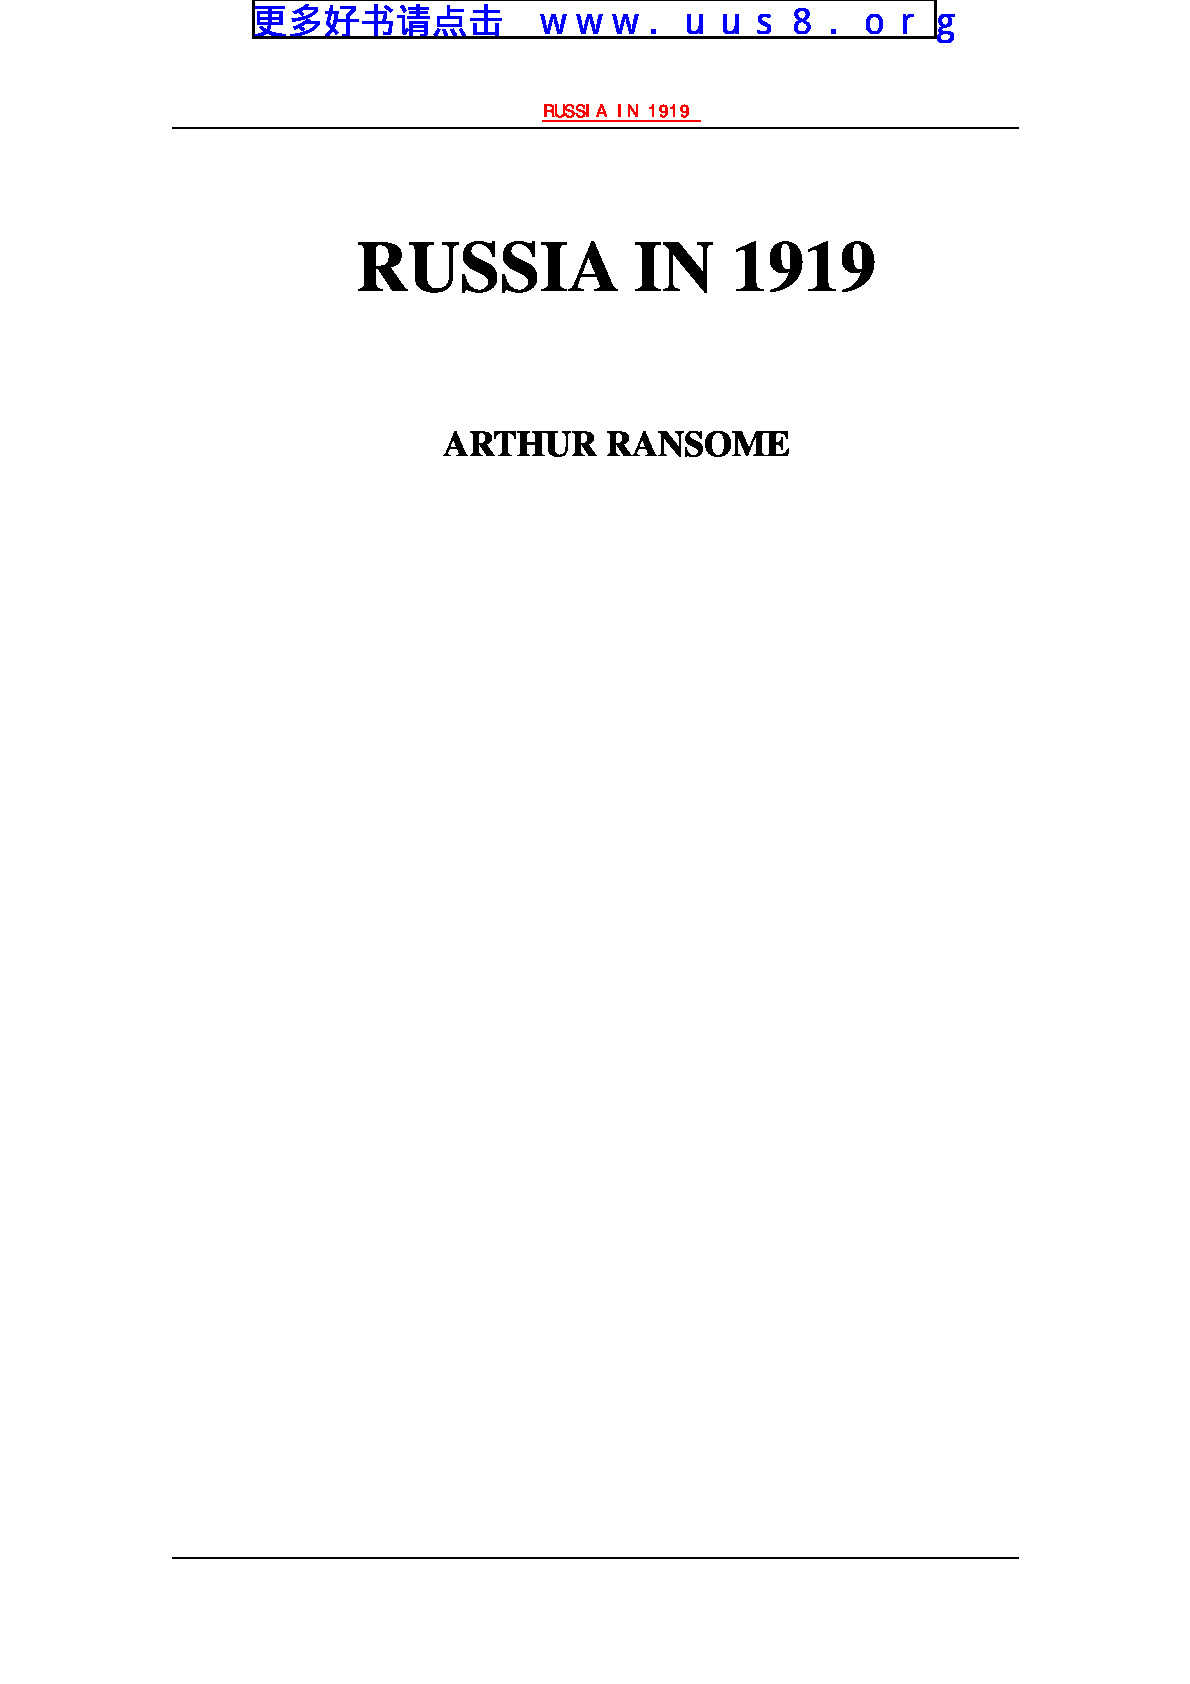 Russia_in_1919(1919的俄国)